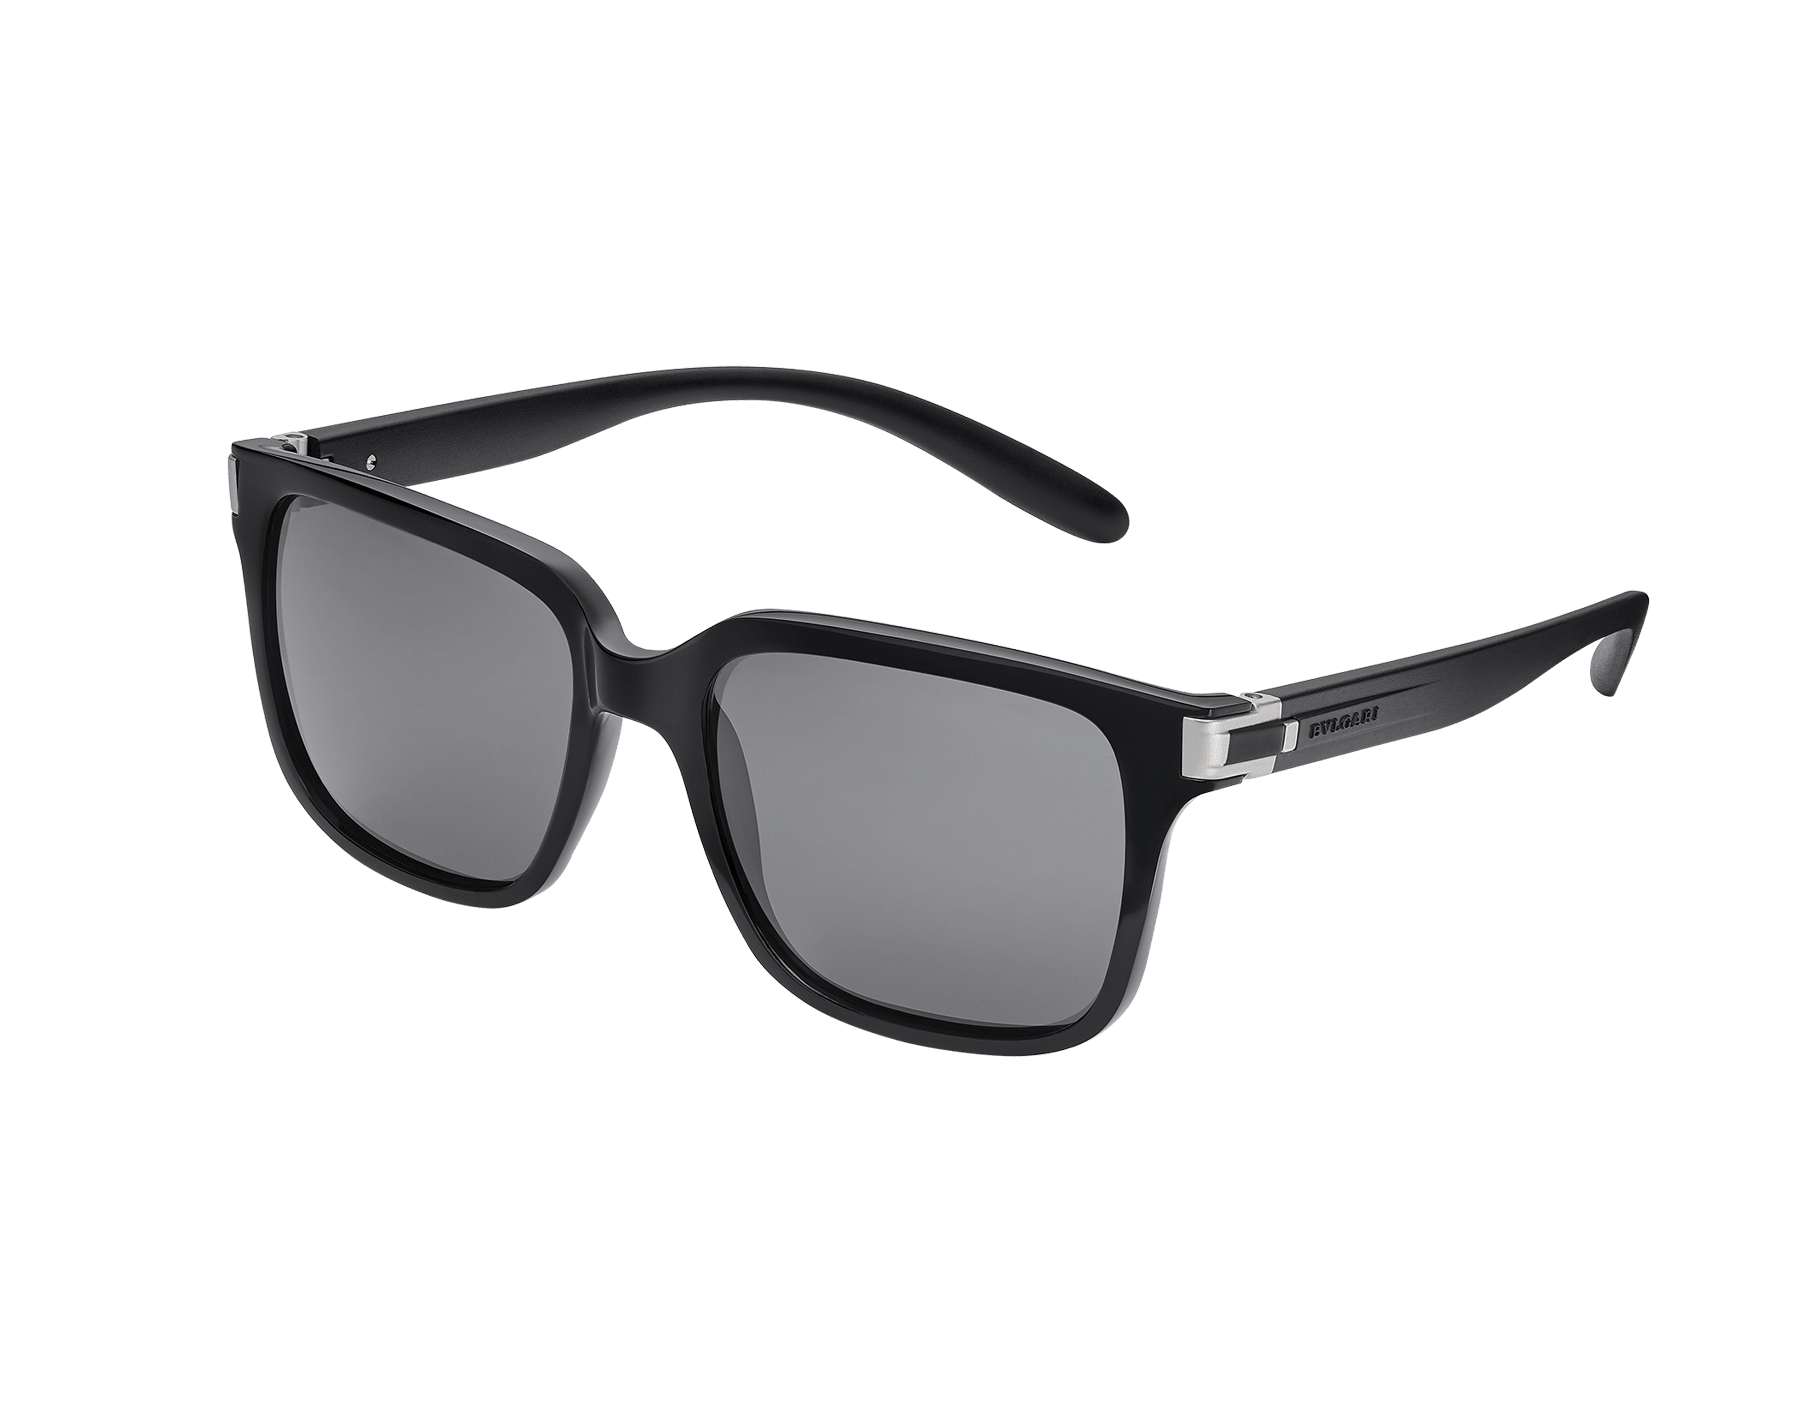 "Bvlgari Bvlgari Aluminium" squared acetate sunglasses 904138 image 1